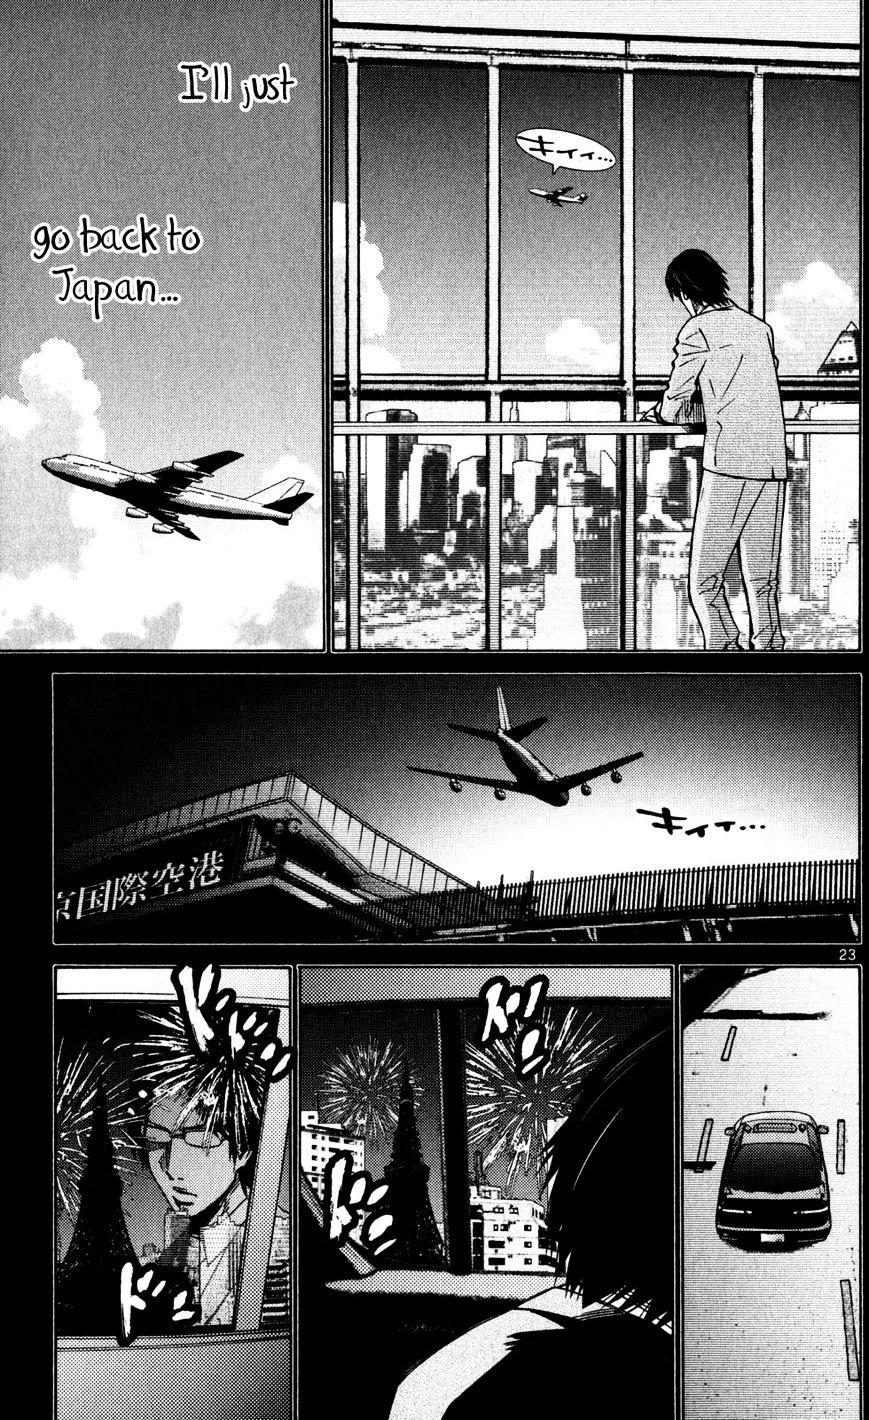 Imawa No Kuni No Alice Chapter 51.4 : Side Story 6 - King Of Diamonds (4) page 26 - Mangakakalot